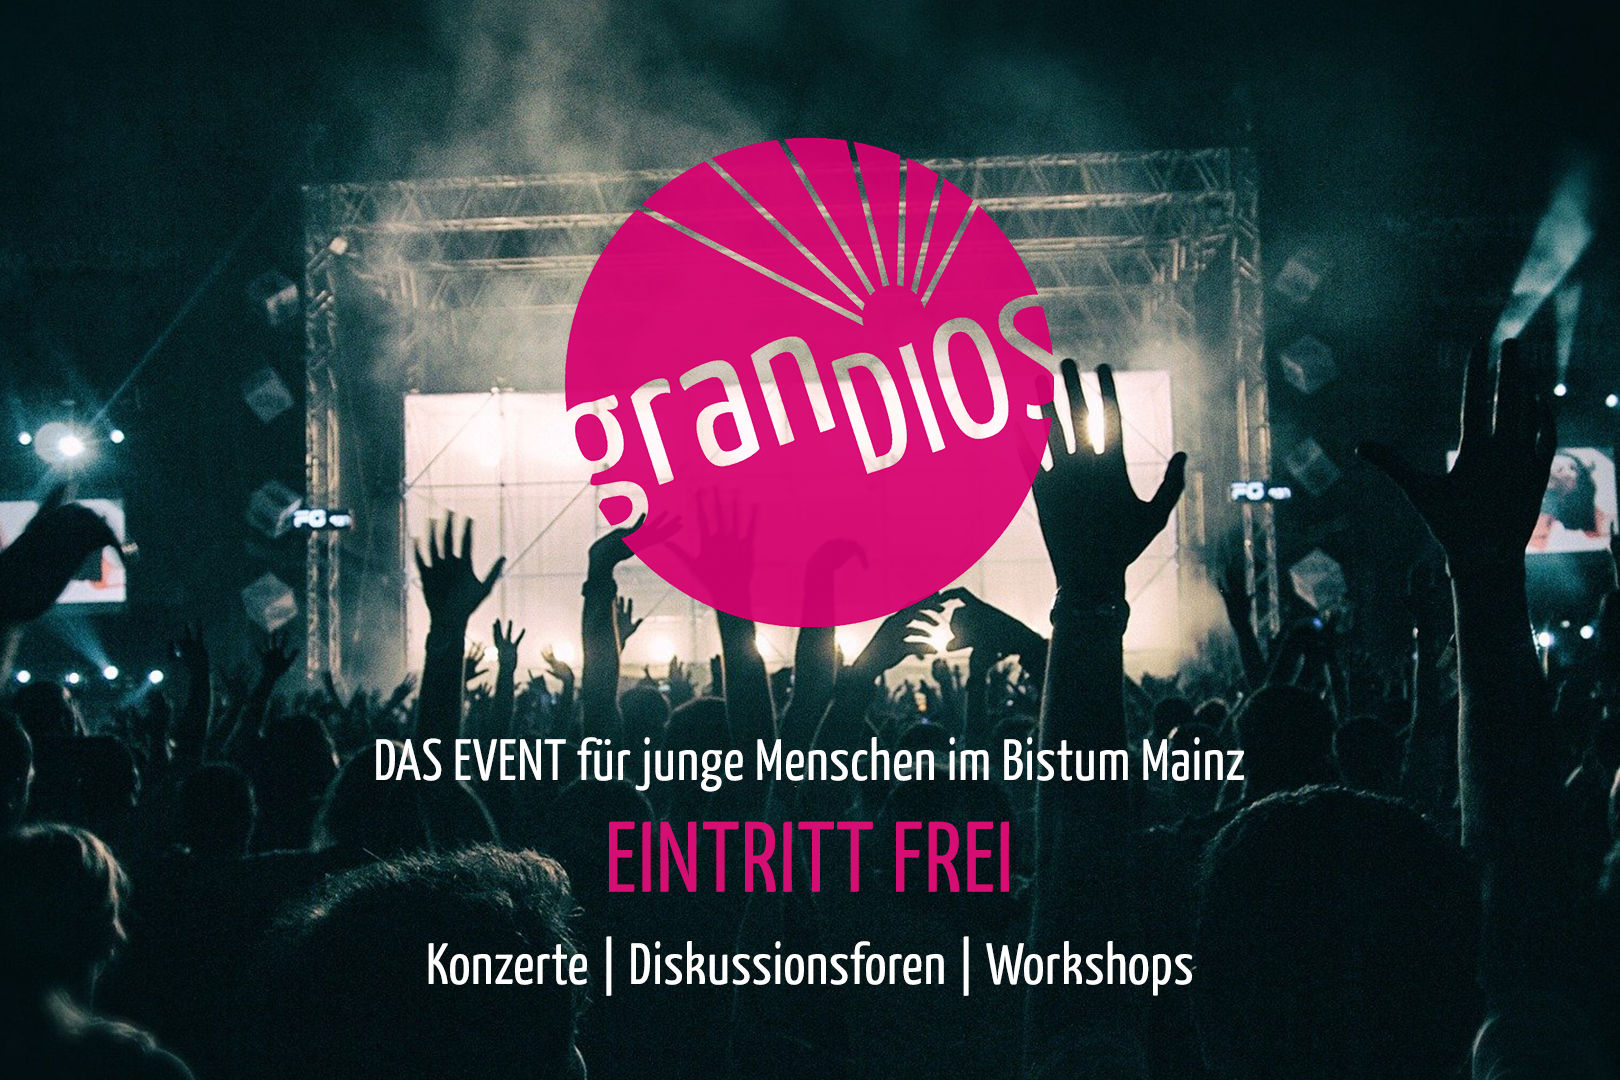 GranDIOS - Das Event für junge Menschen im Bistum Mainz (c) Bistum Mainz